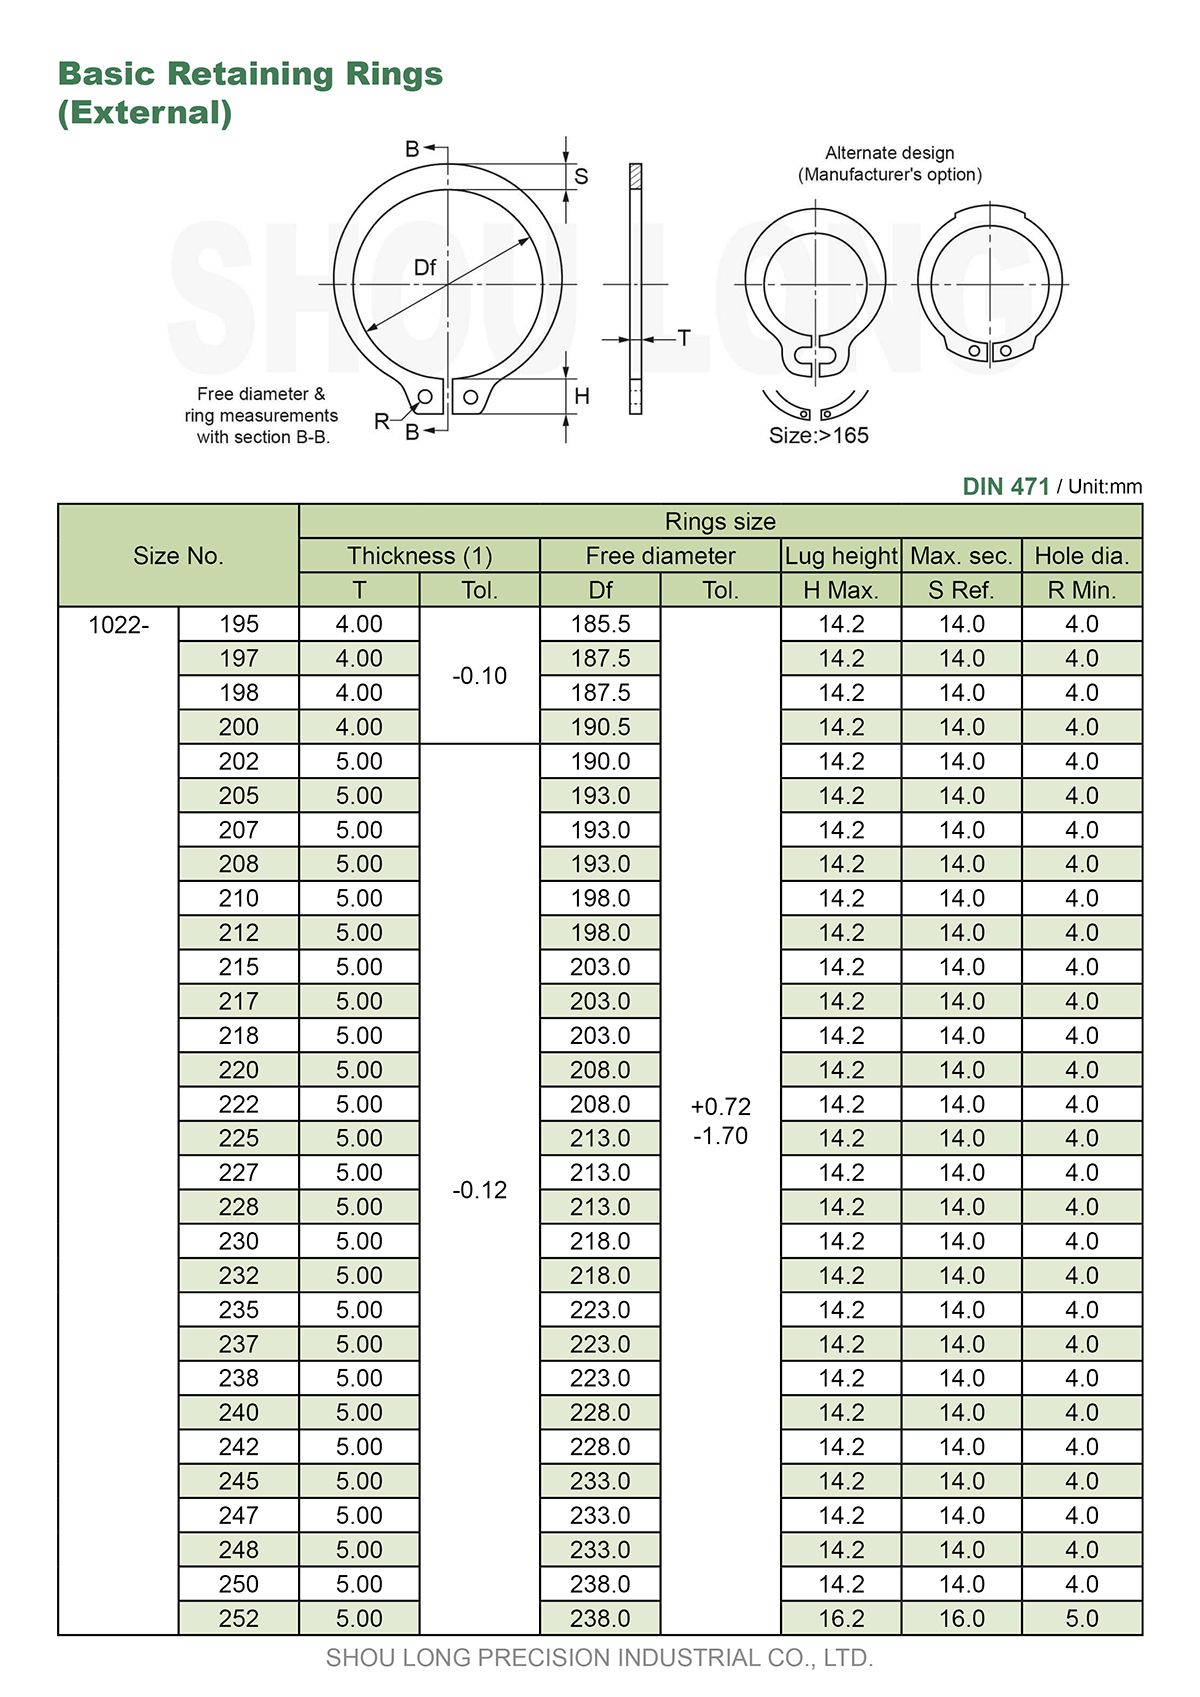 Especificação de Anéis de Retenção Básicos Métricos para Eixo DIN471-5